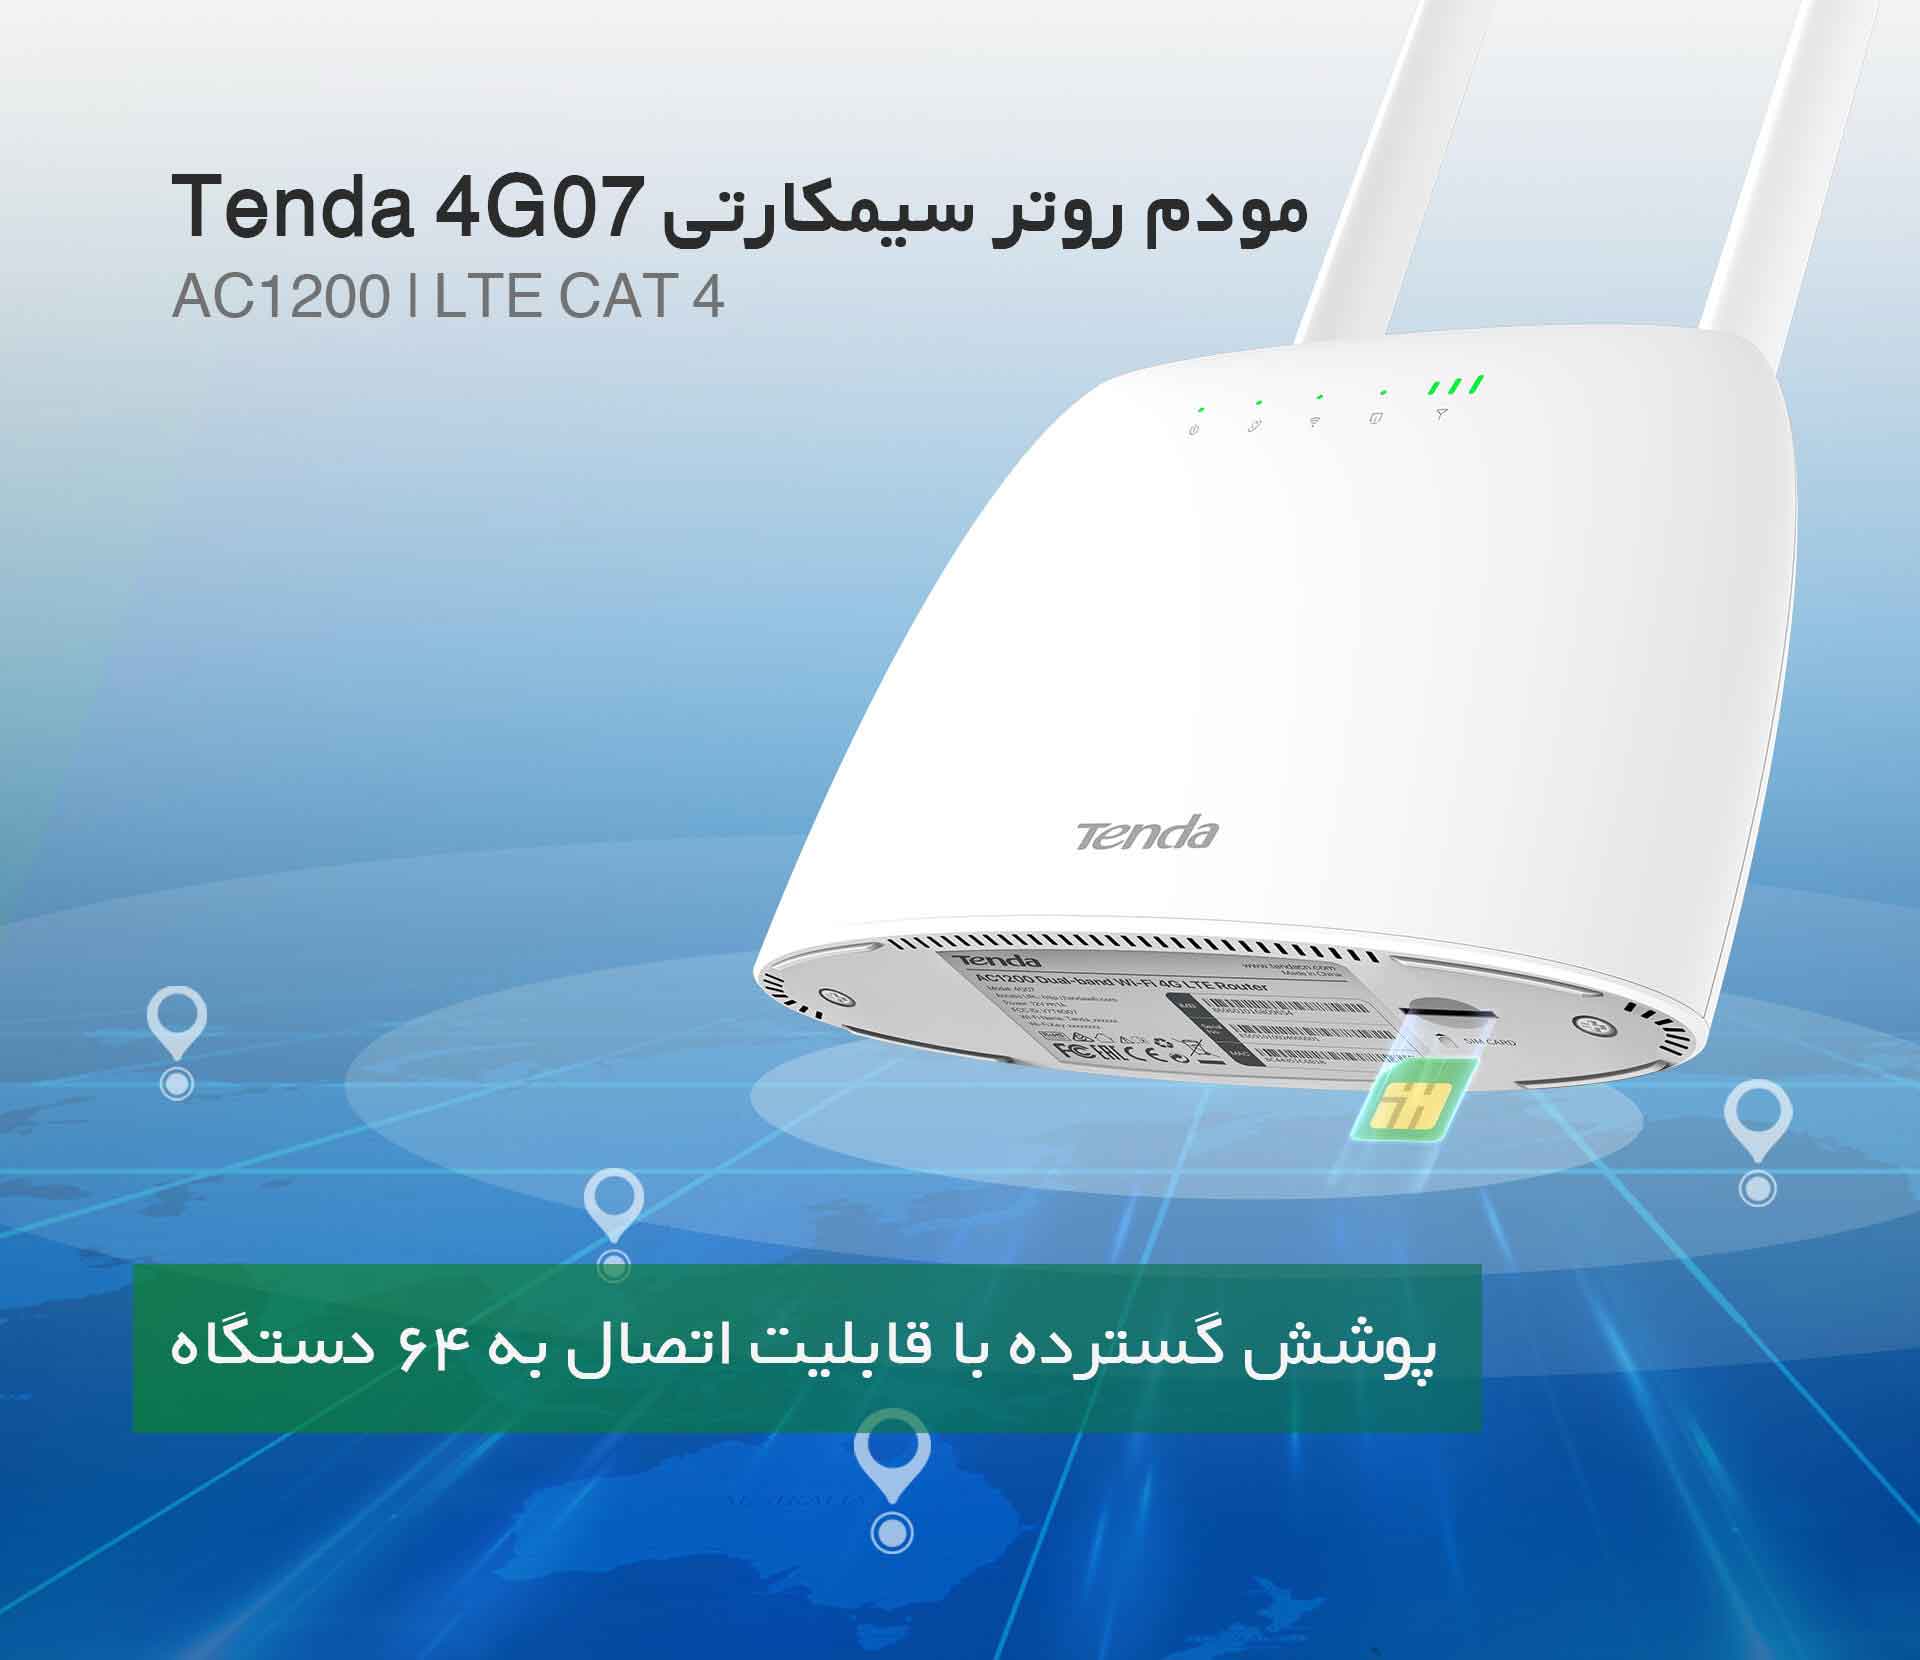 مودم روتر 4G رو میزی تندا Tenda 4G07 - شبکه ساز